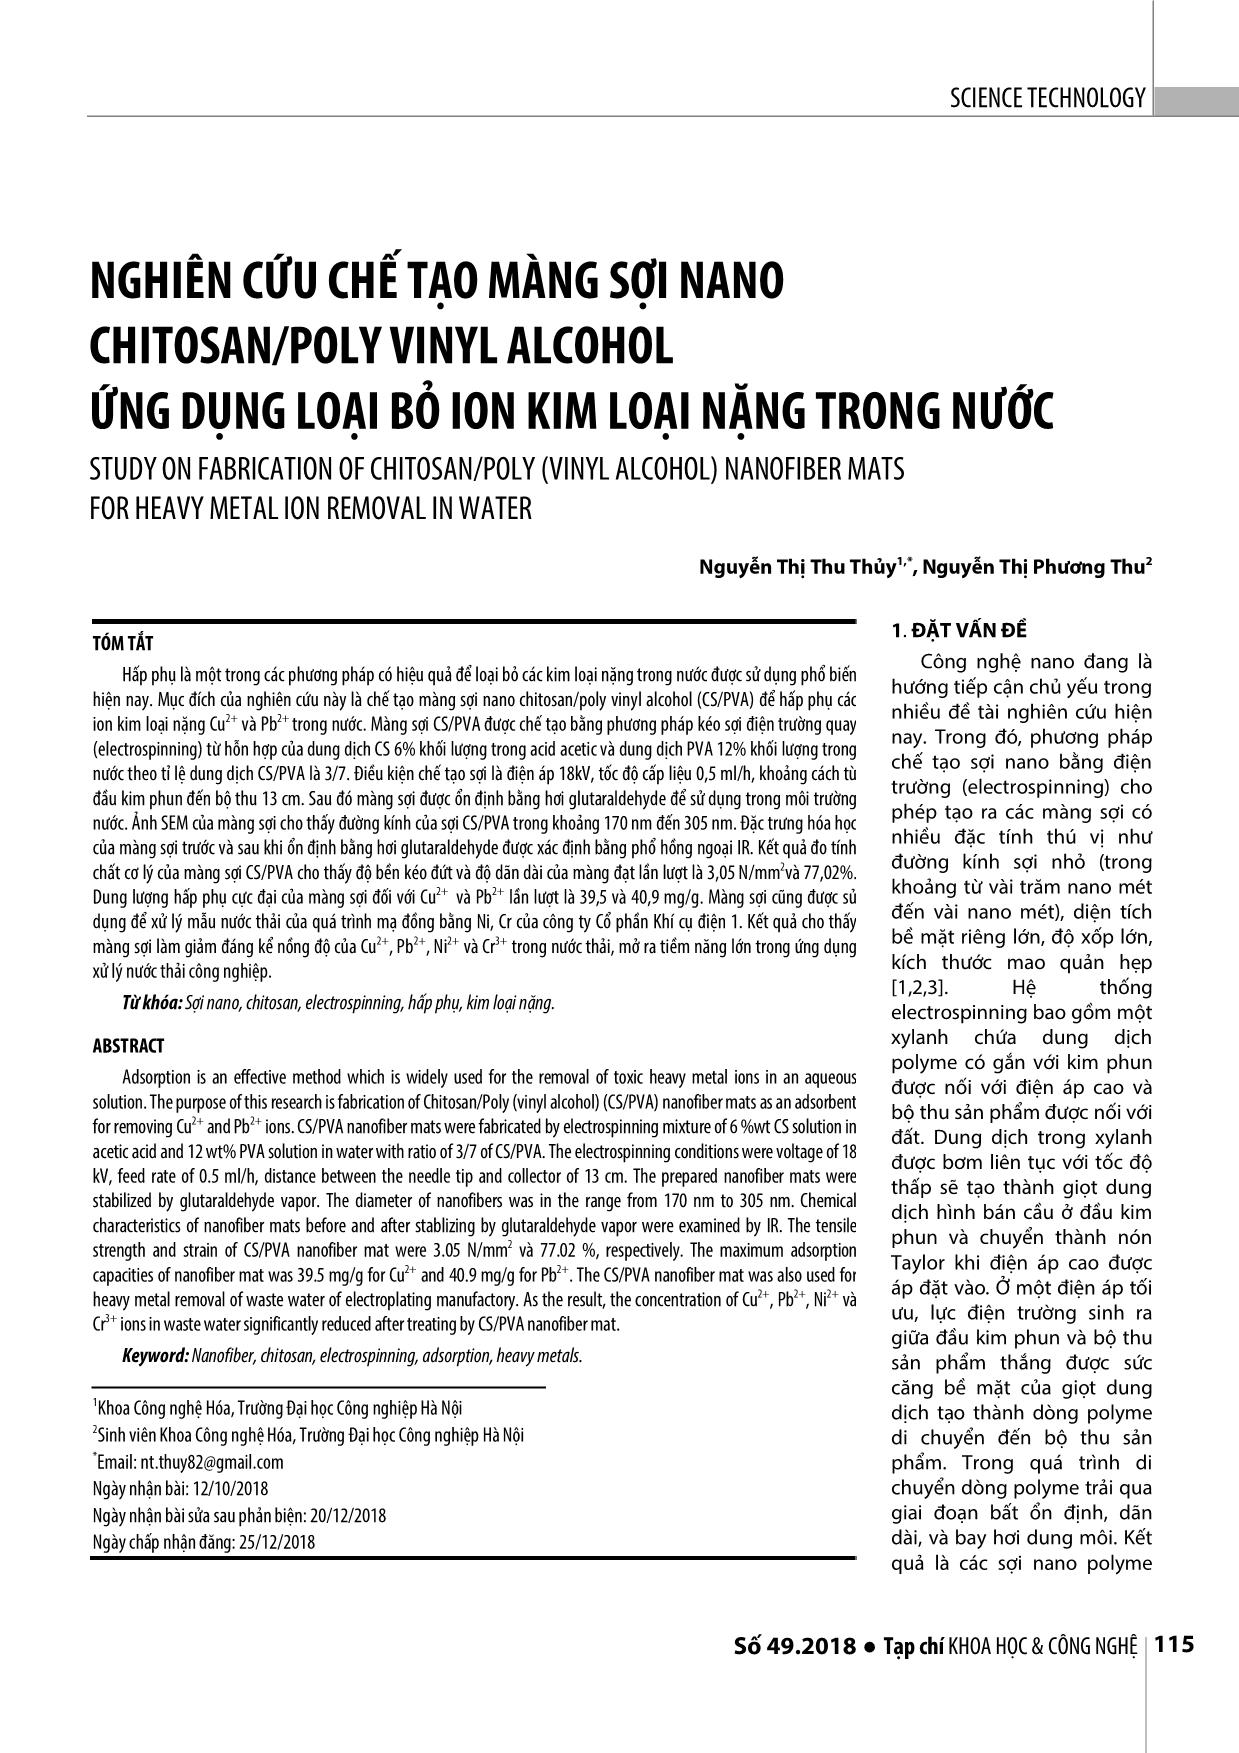 Nghiên cứu chế tạo màng sợi nano chitosan/poly vinyl alcohol ứng dụng loại bỏ ion kim loại nặng trong nước trang 1